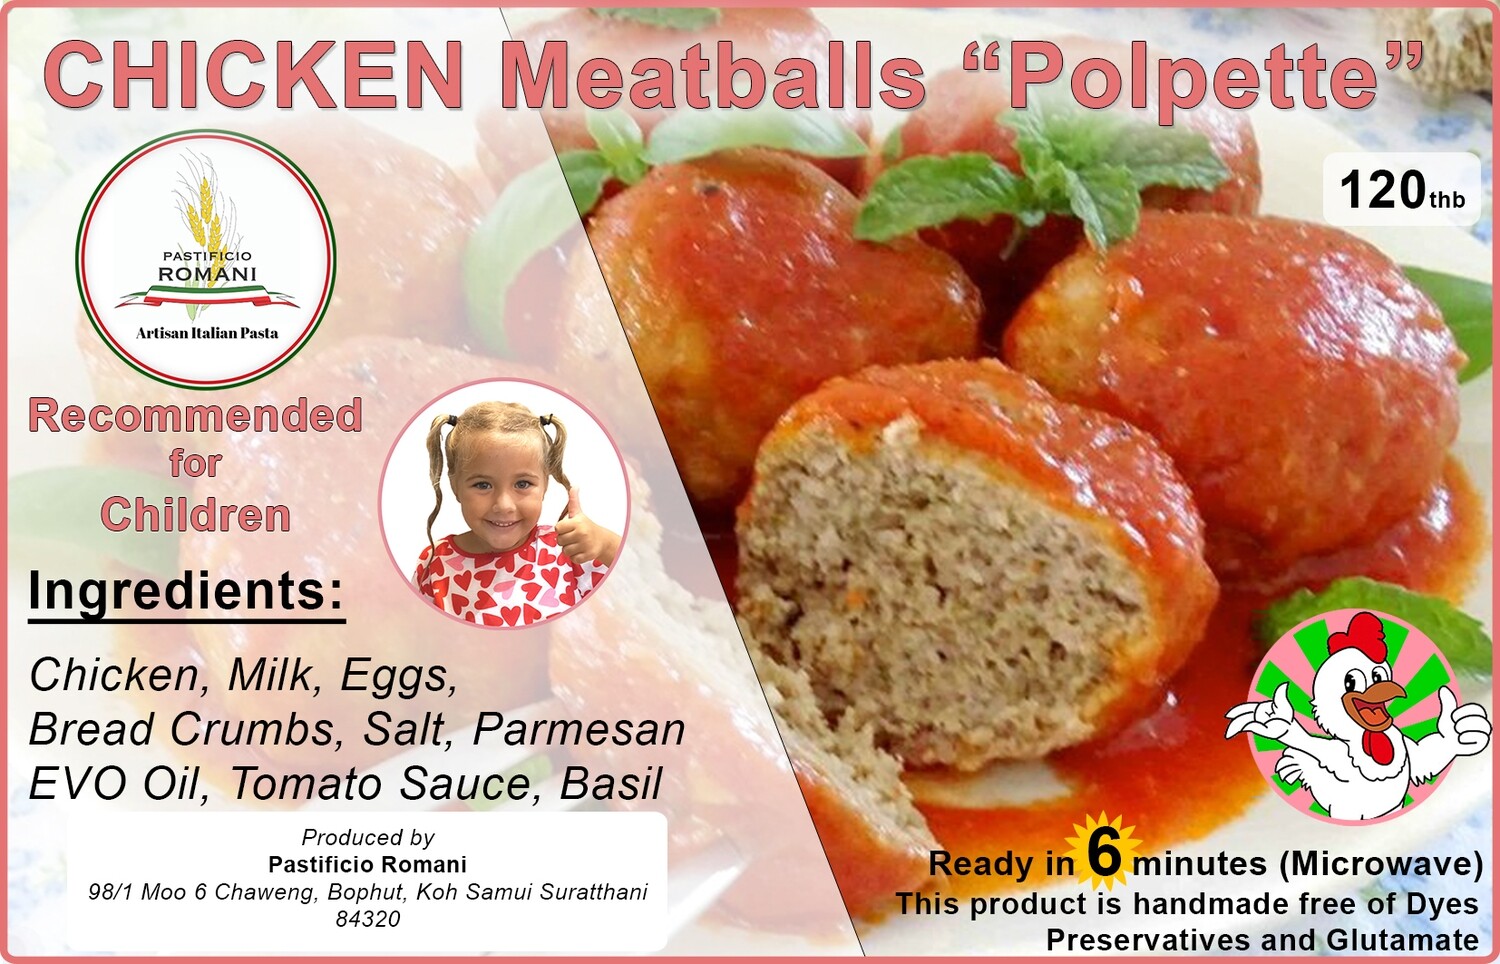 Chicken Meatballs "Polpette"